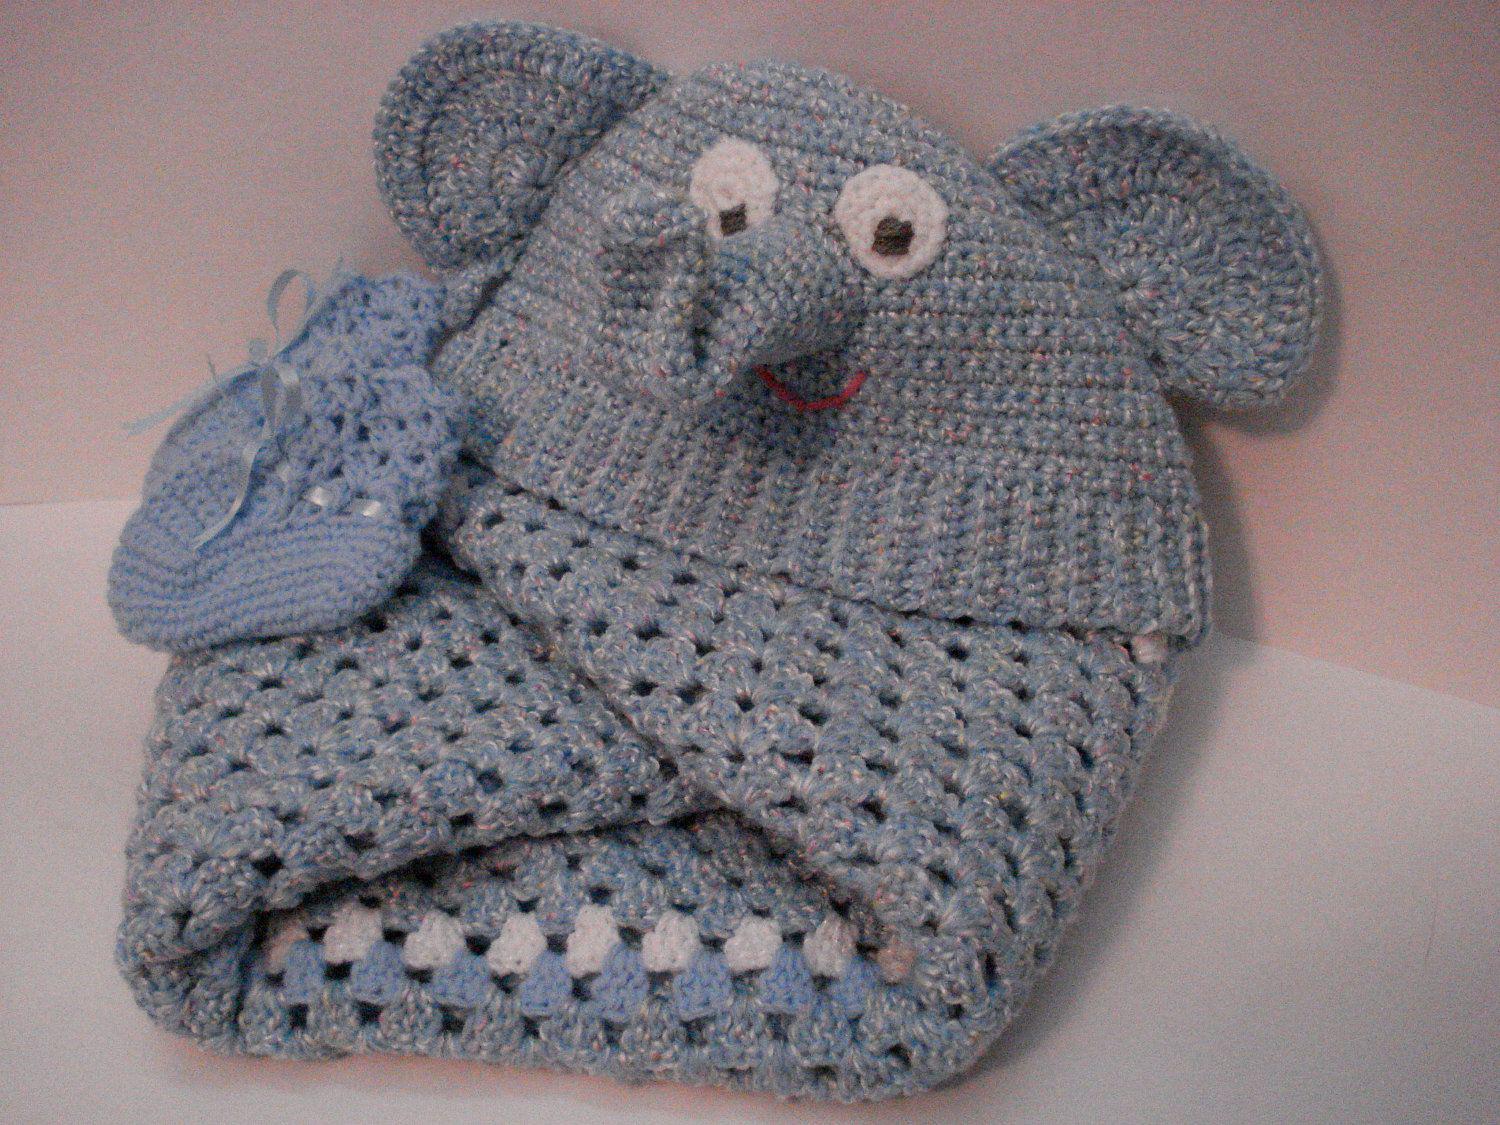 Elephant Baby Blanket Crochet Pattern